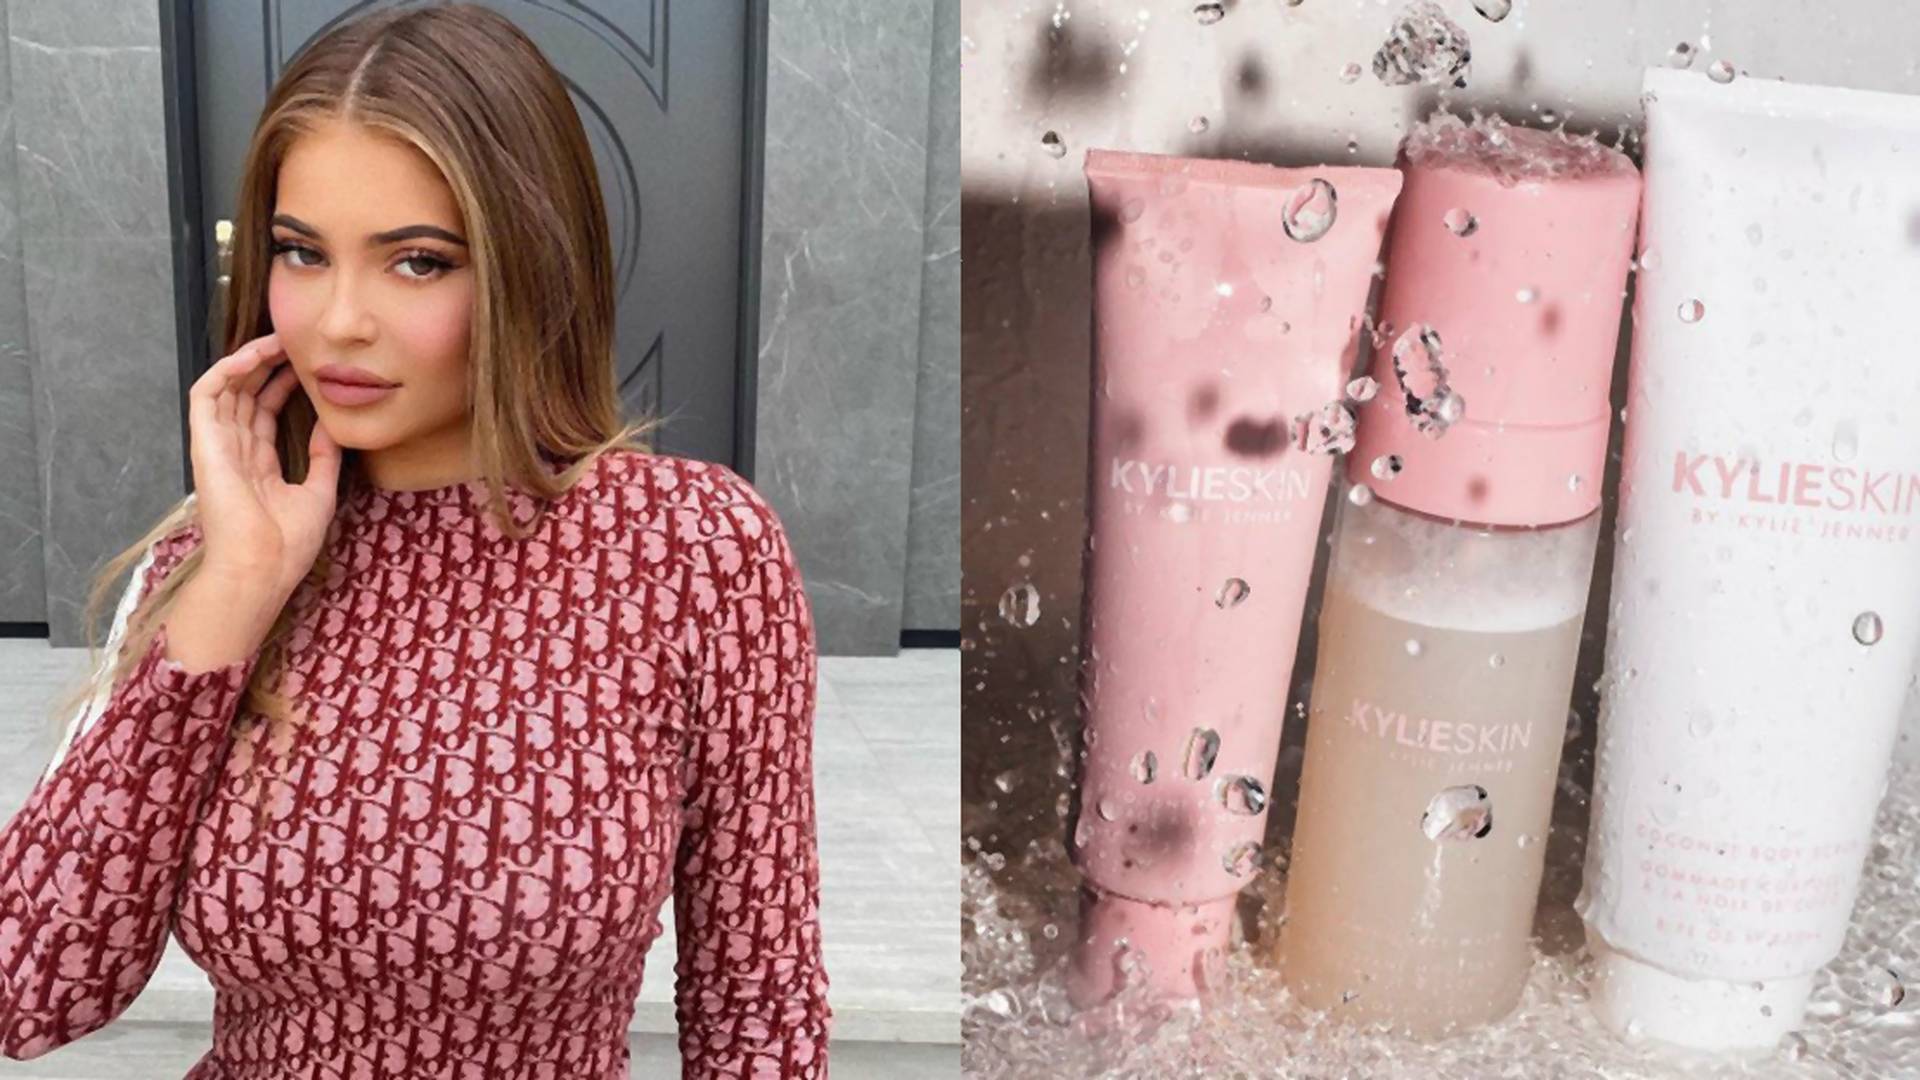 Kosmetyki do pielęgnacji Kylie Jenner będą dostępne w Polsce. Ile zapłacimy za Kylie Skin?